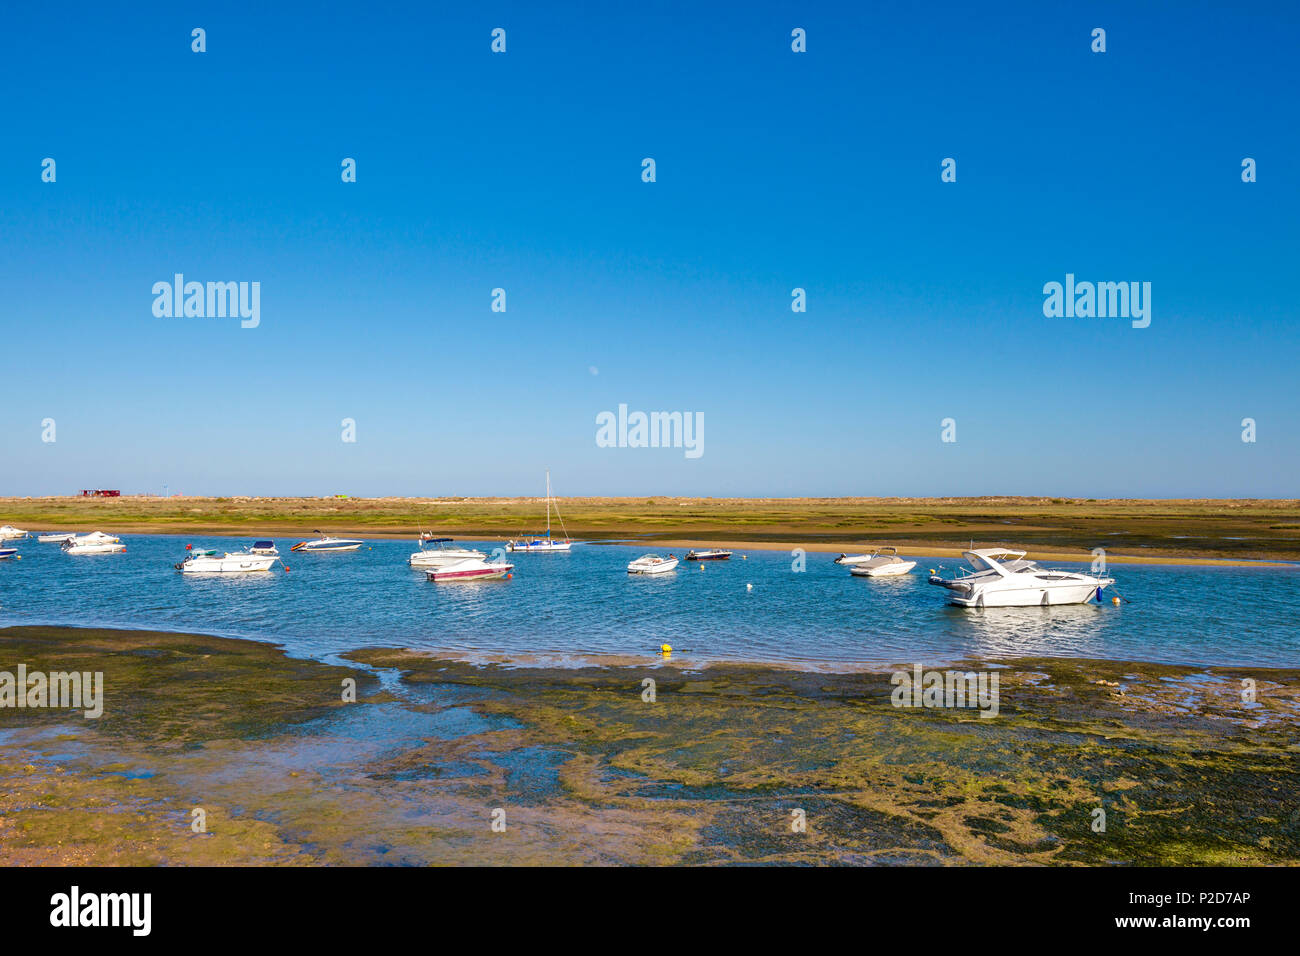 Boats in the lagoon, Cabanas near Tavira, Algarve, Portugal Stock Photo